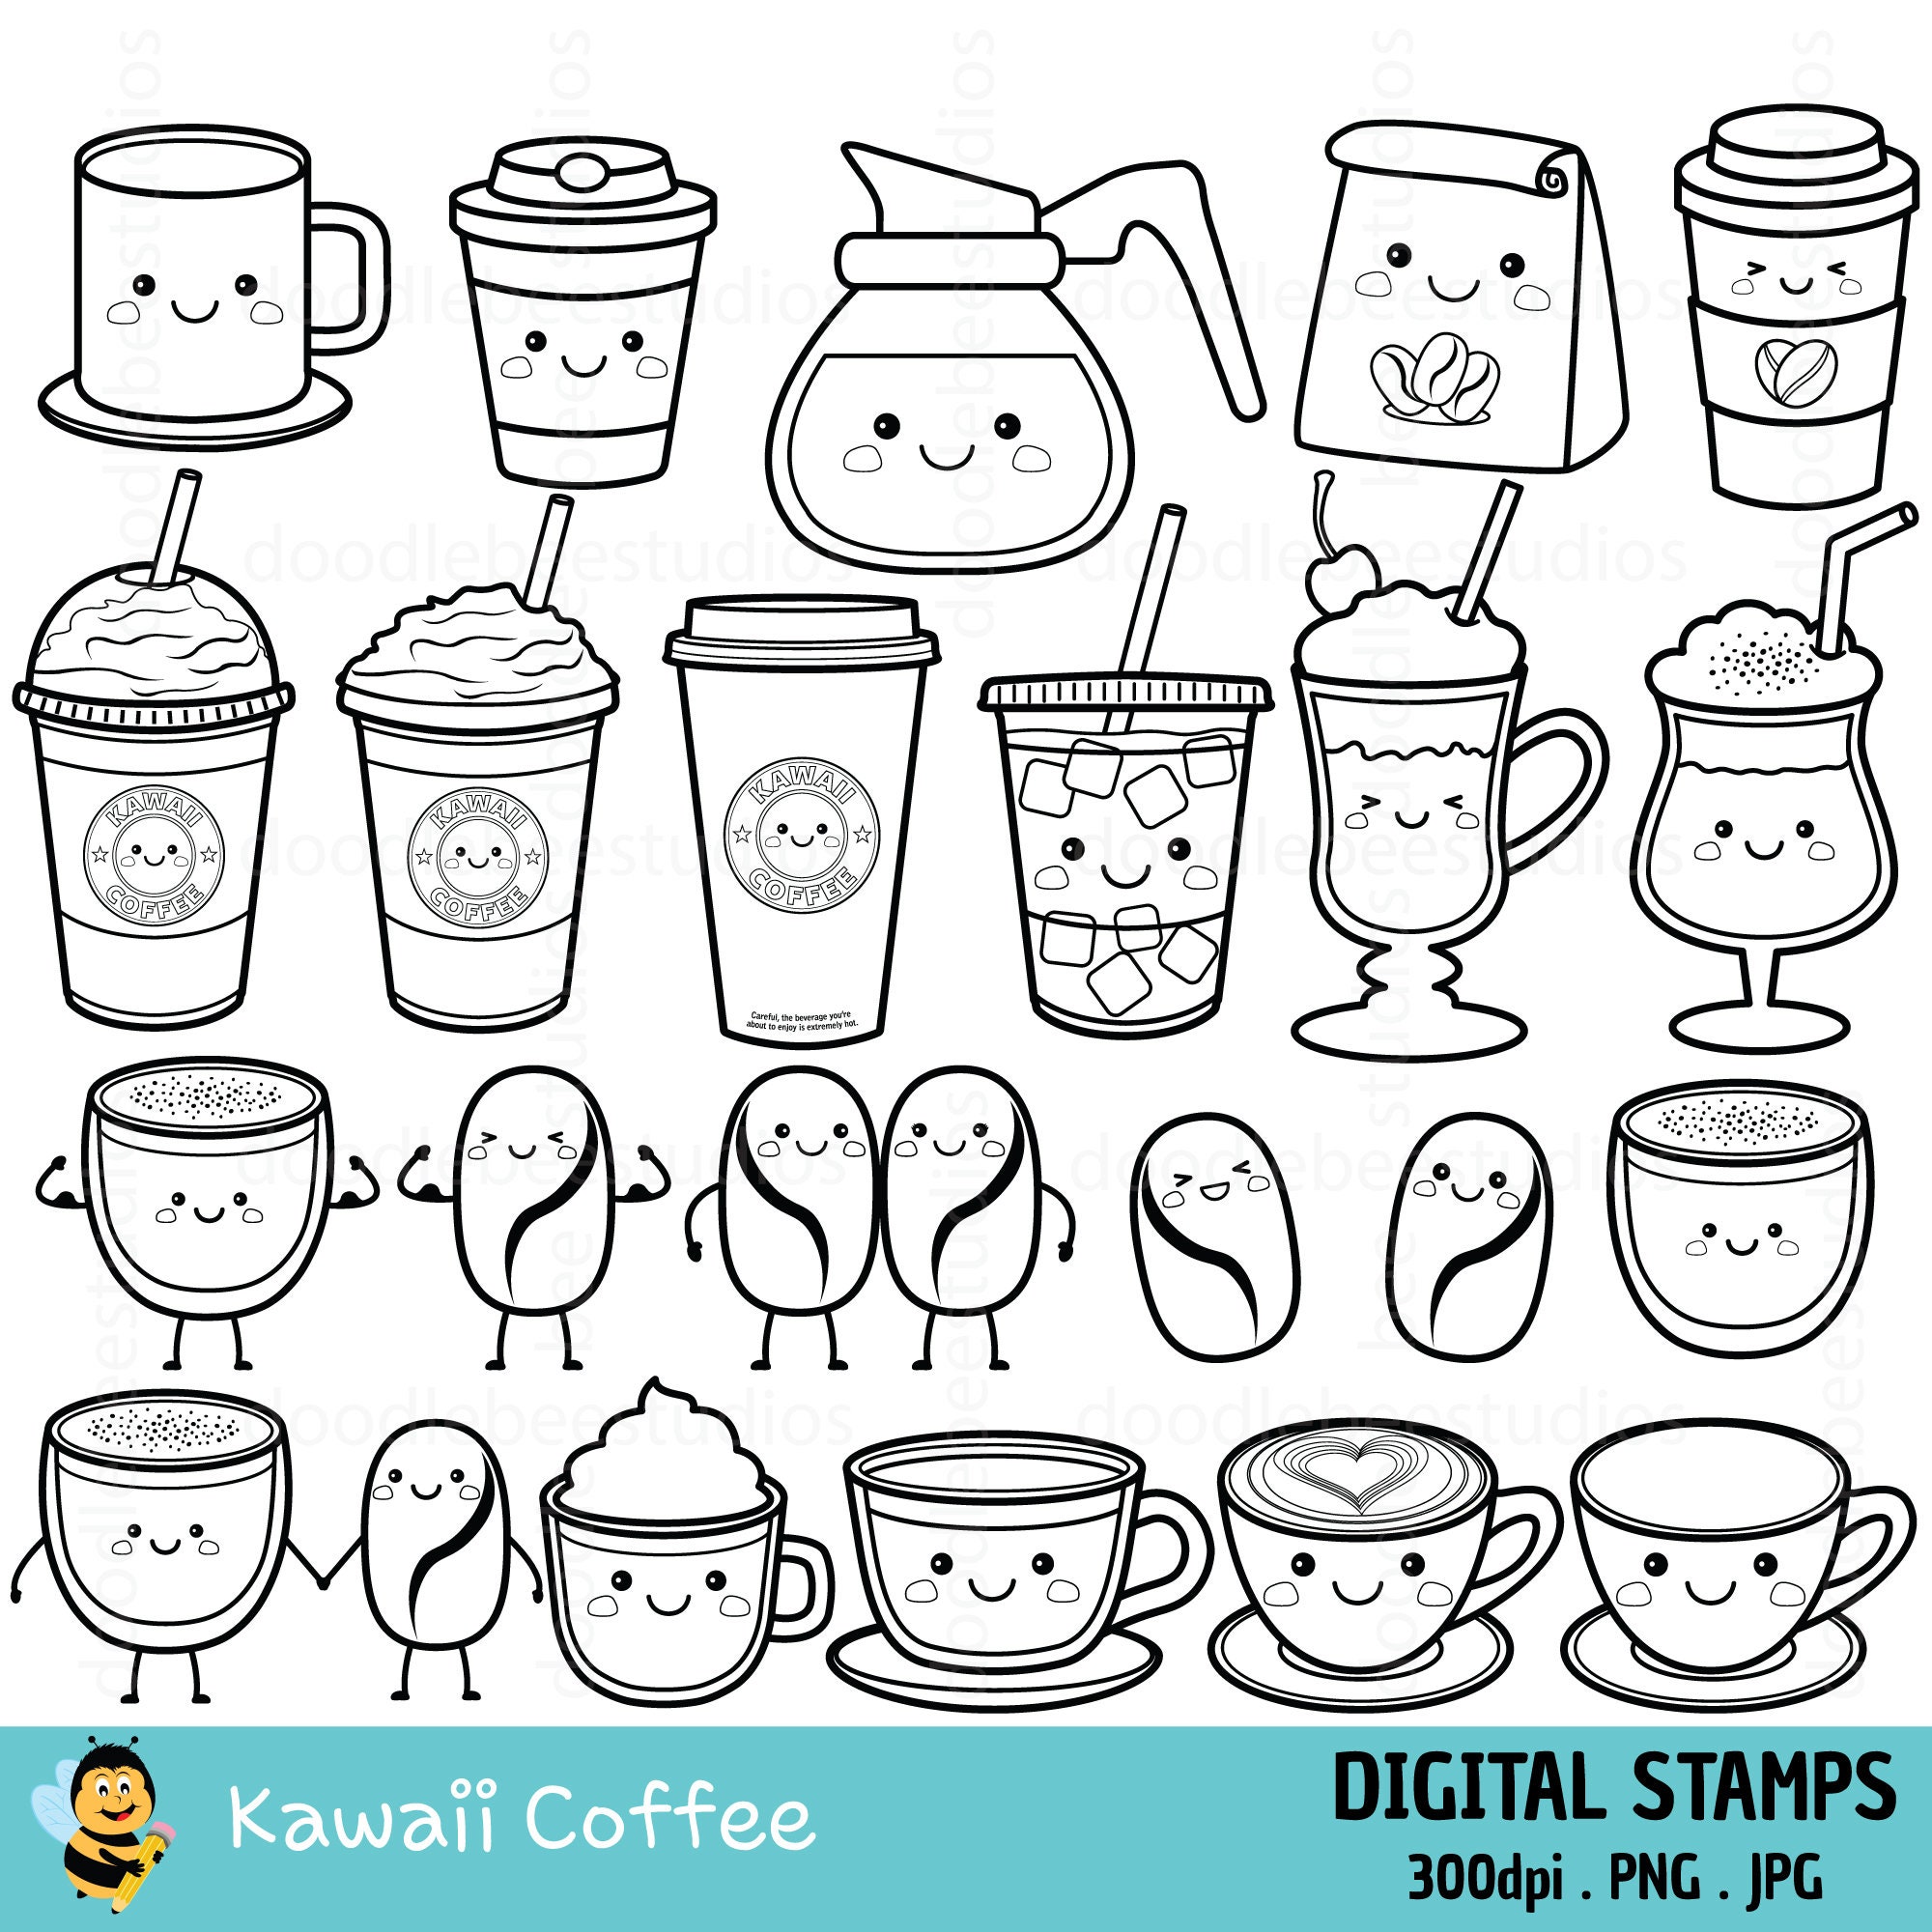 Kawaii Coffee Digital Stamps Cute Coffee Digital Stamps - Etsy España